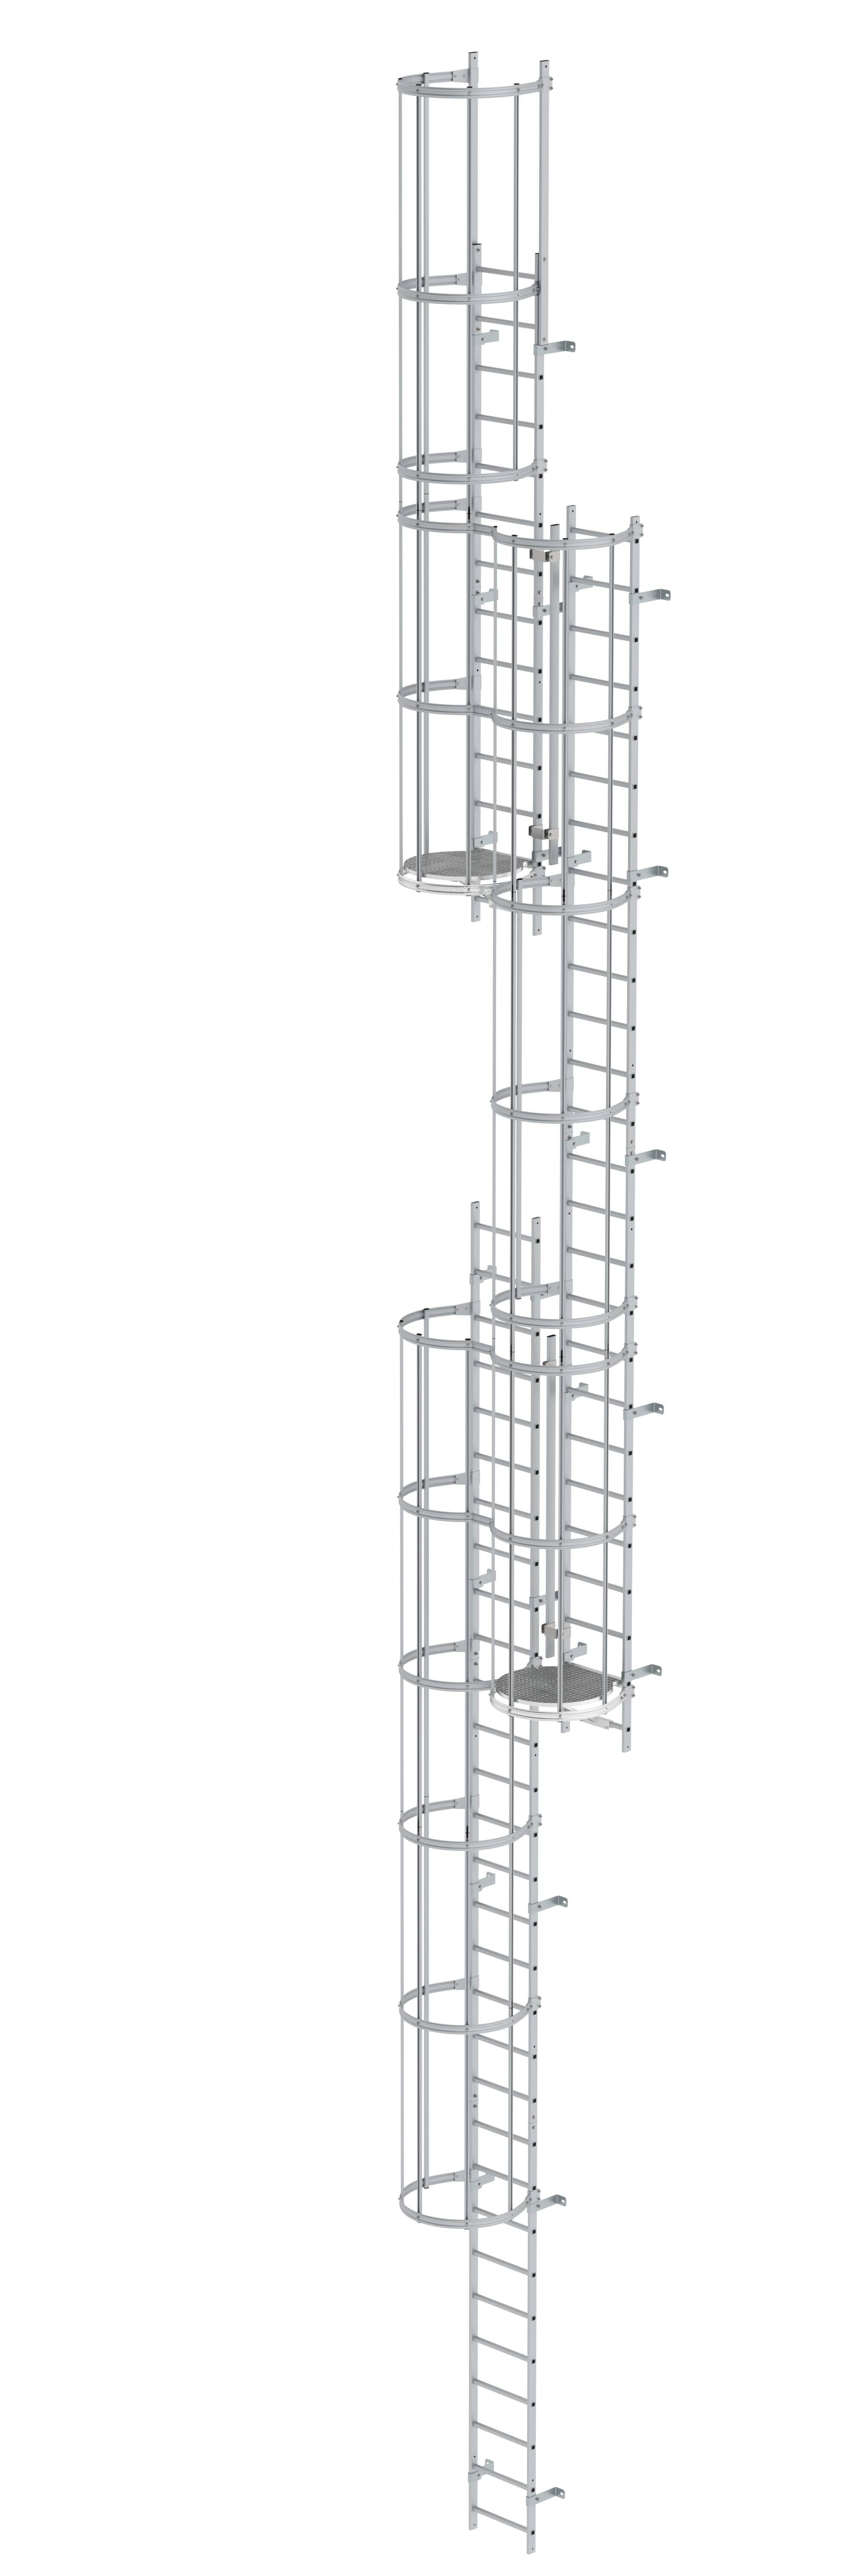 Mehrzügige Steigleiter mit Rückenschutz (Maschinen) Aluminium blank 15,20m